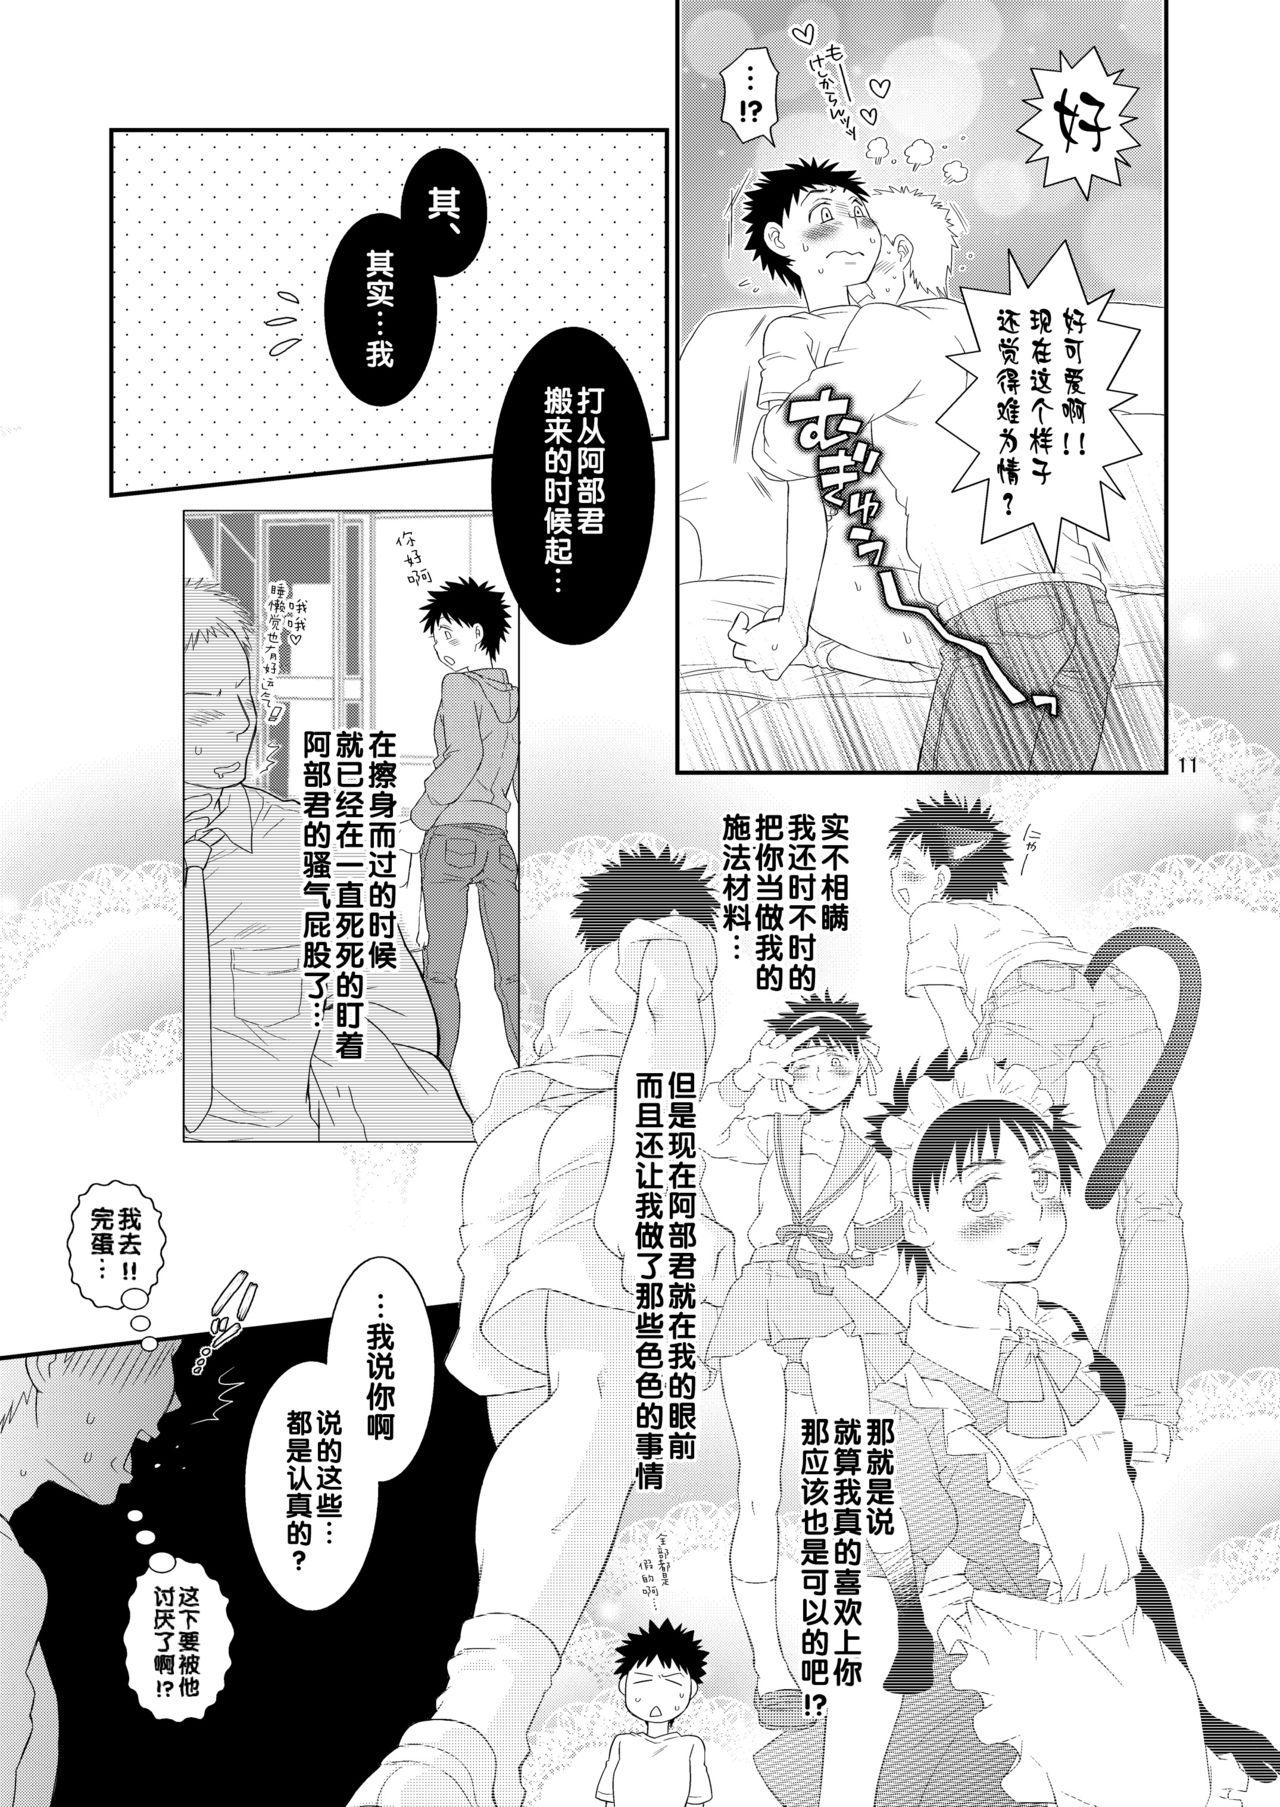 Tribbing Super Freak Takaya-kun! - Ookiku furikabutte | big windup Free - Page 11